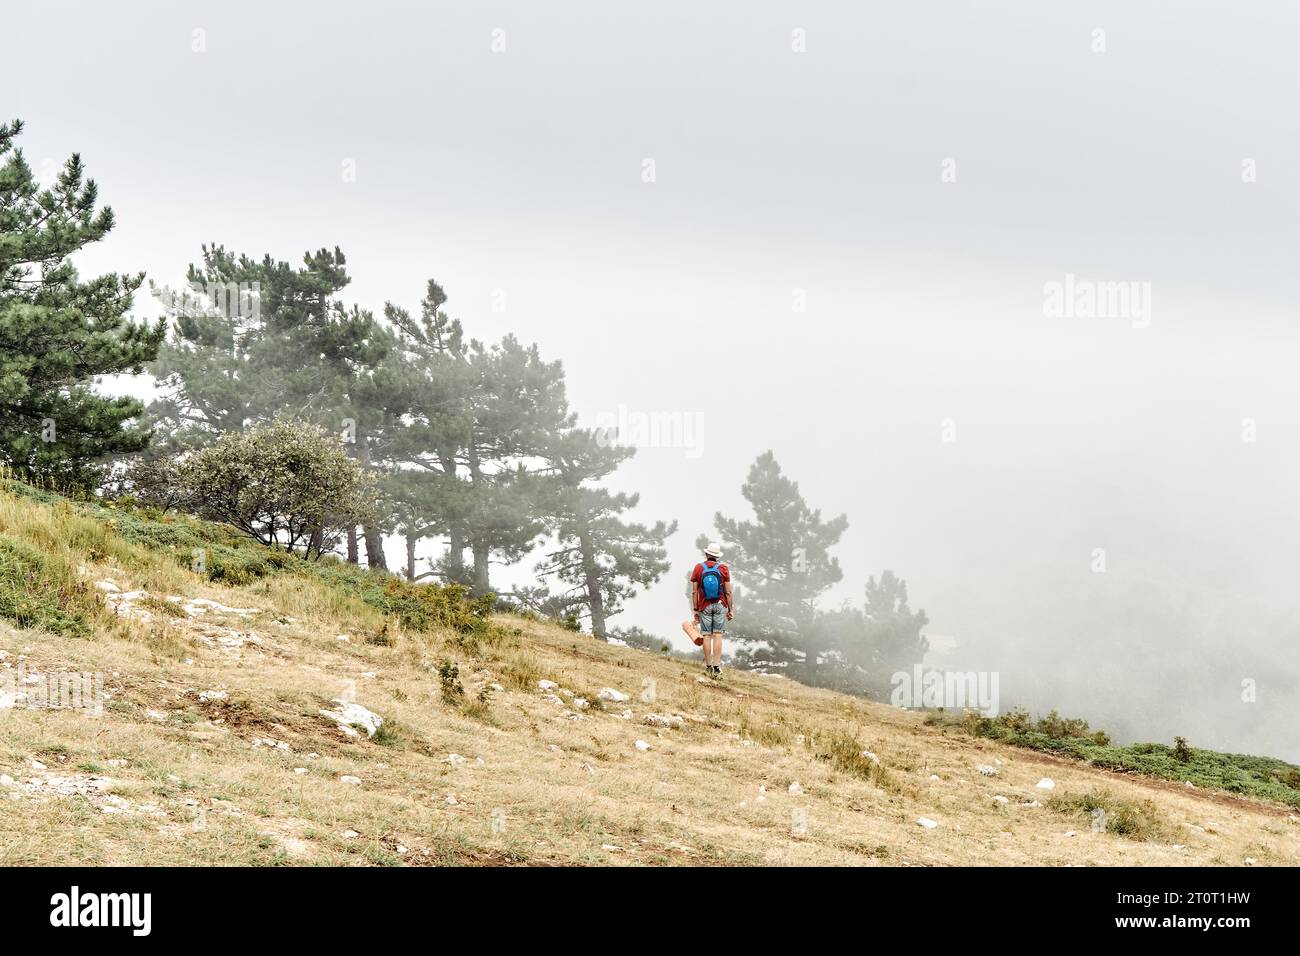 Ein einsamer Tourist schaut auf die riesige Nebelwolke, die am Berghang steht. Ein Mann mit Rucksack wandert durch das wilde Hochlandtal. Mutiger Reisender auf einem nebeligen Hügel Stockfoto